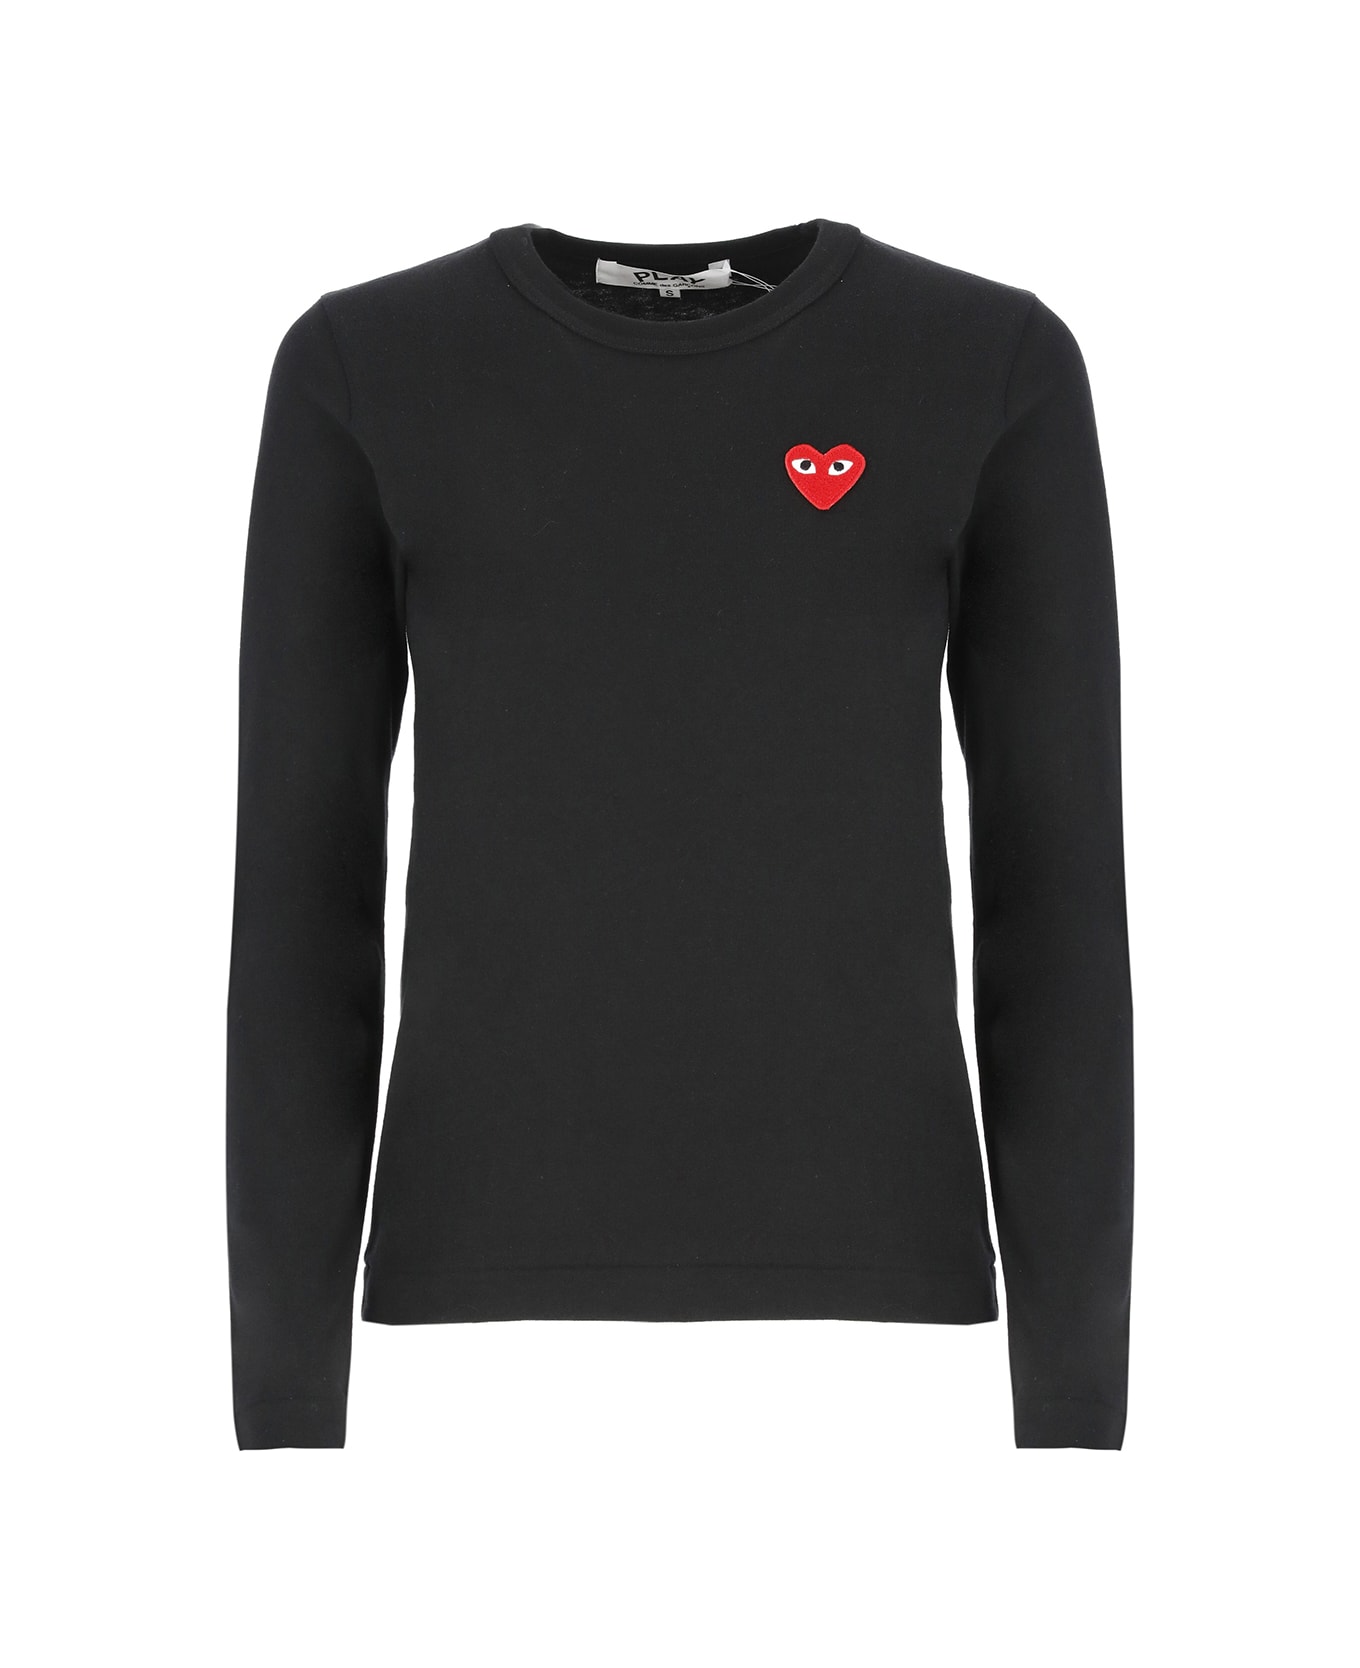 Comme des Garçons Play Heart T-shirt - Black